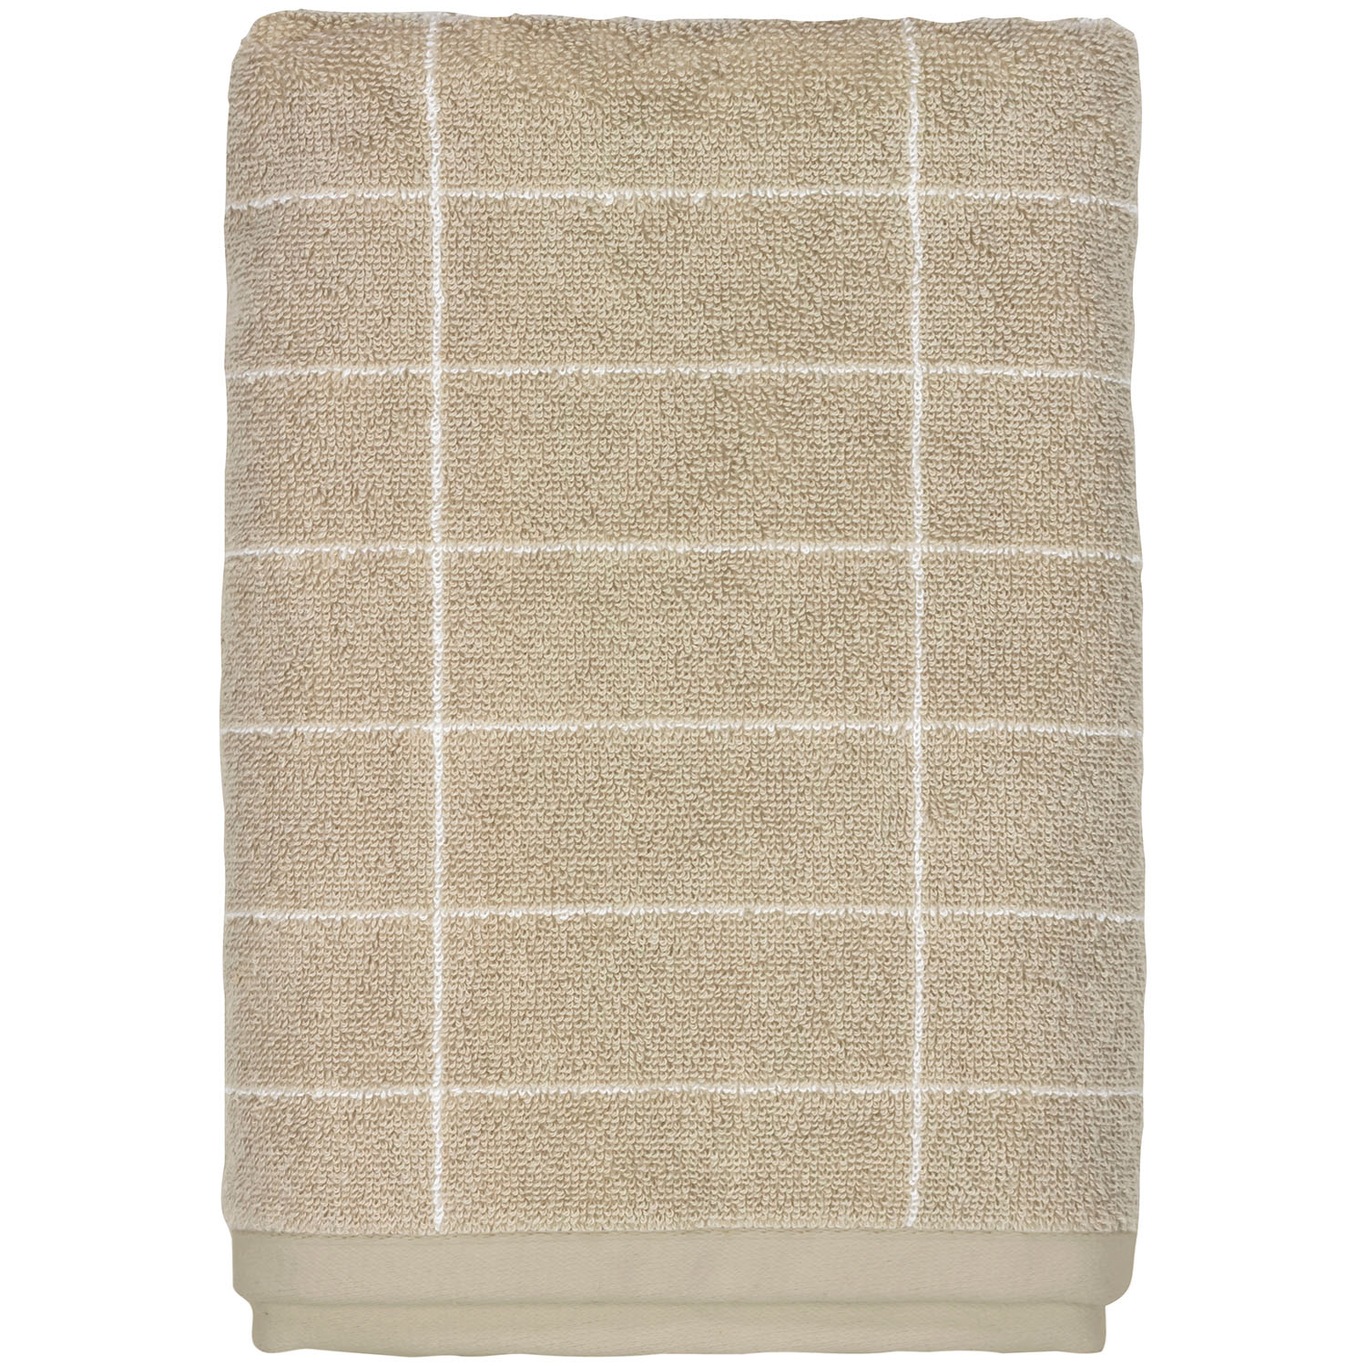 Tile Handduk Sand 2-pack, 38x60 cm